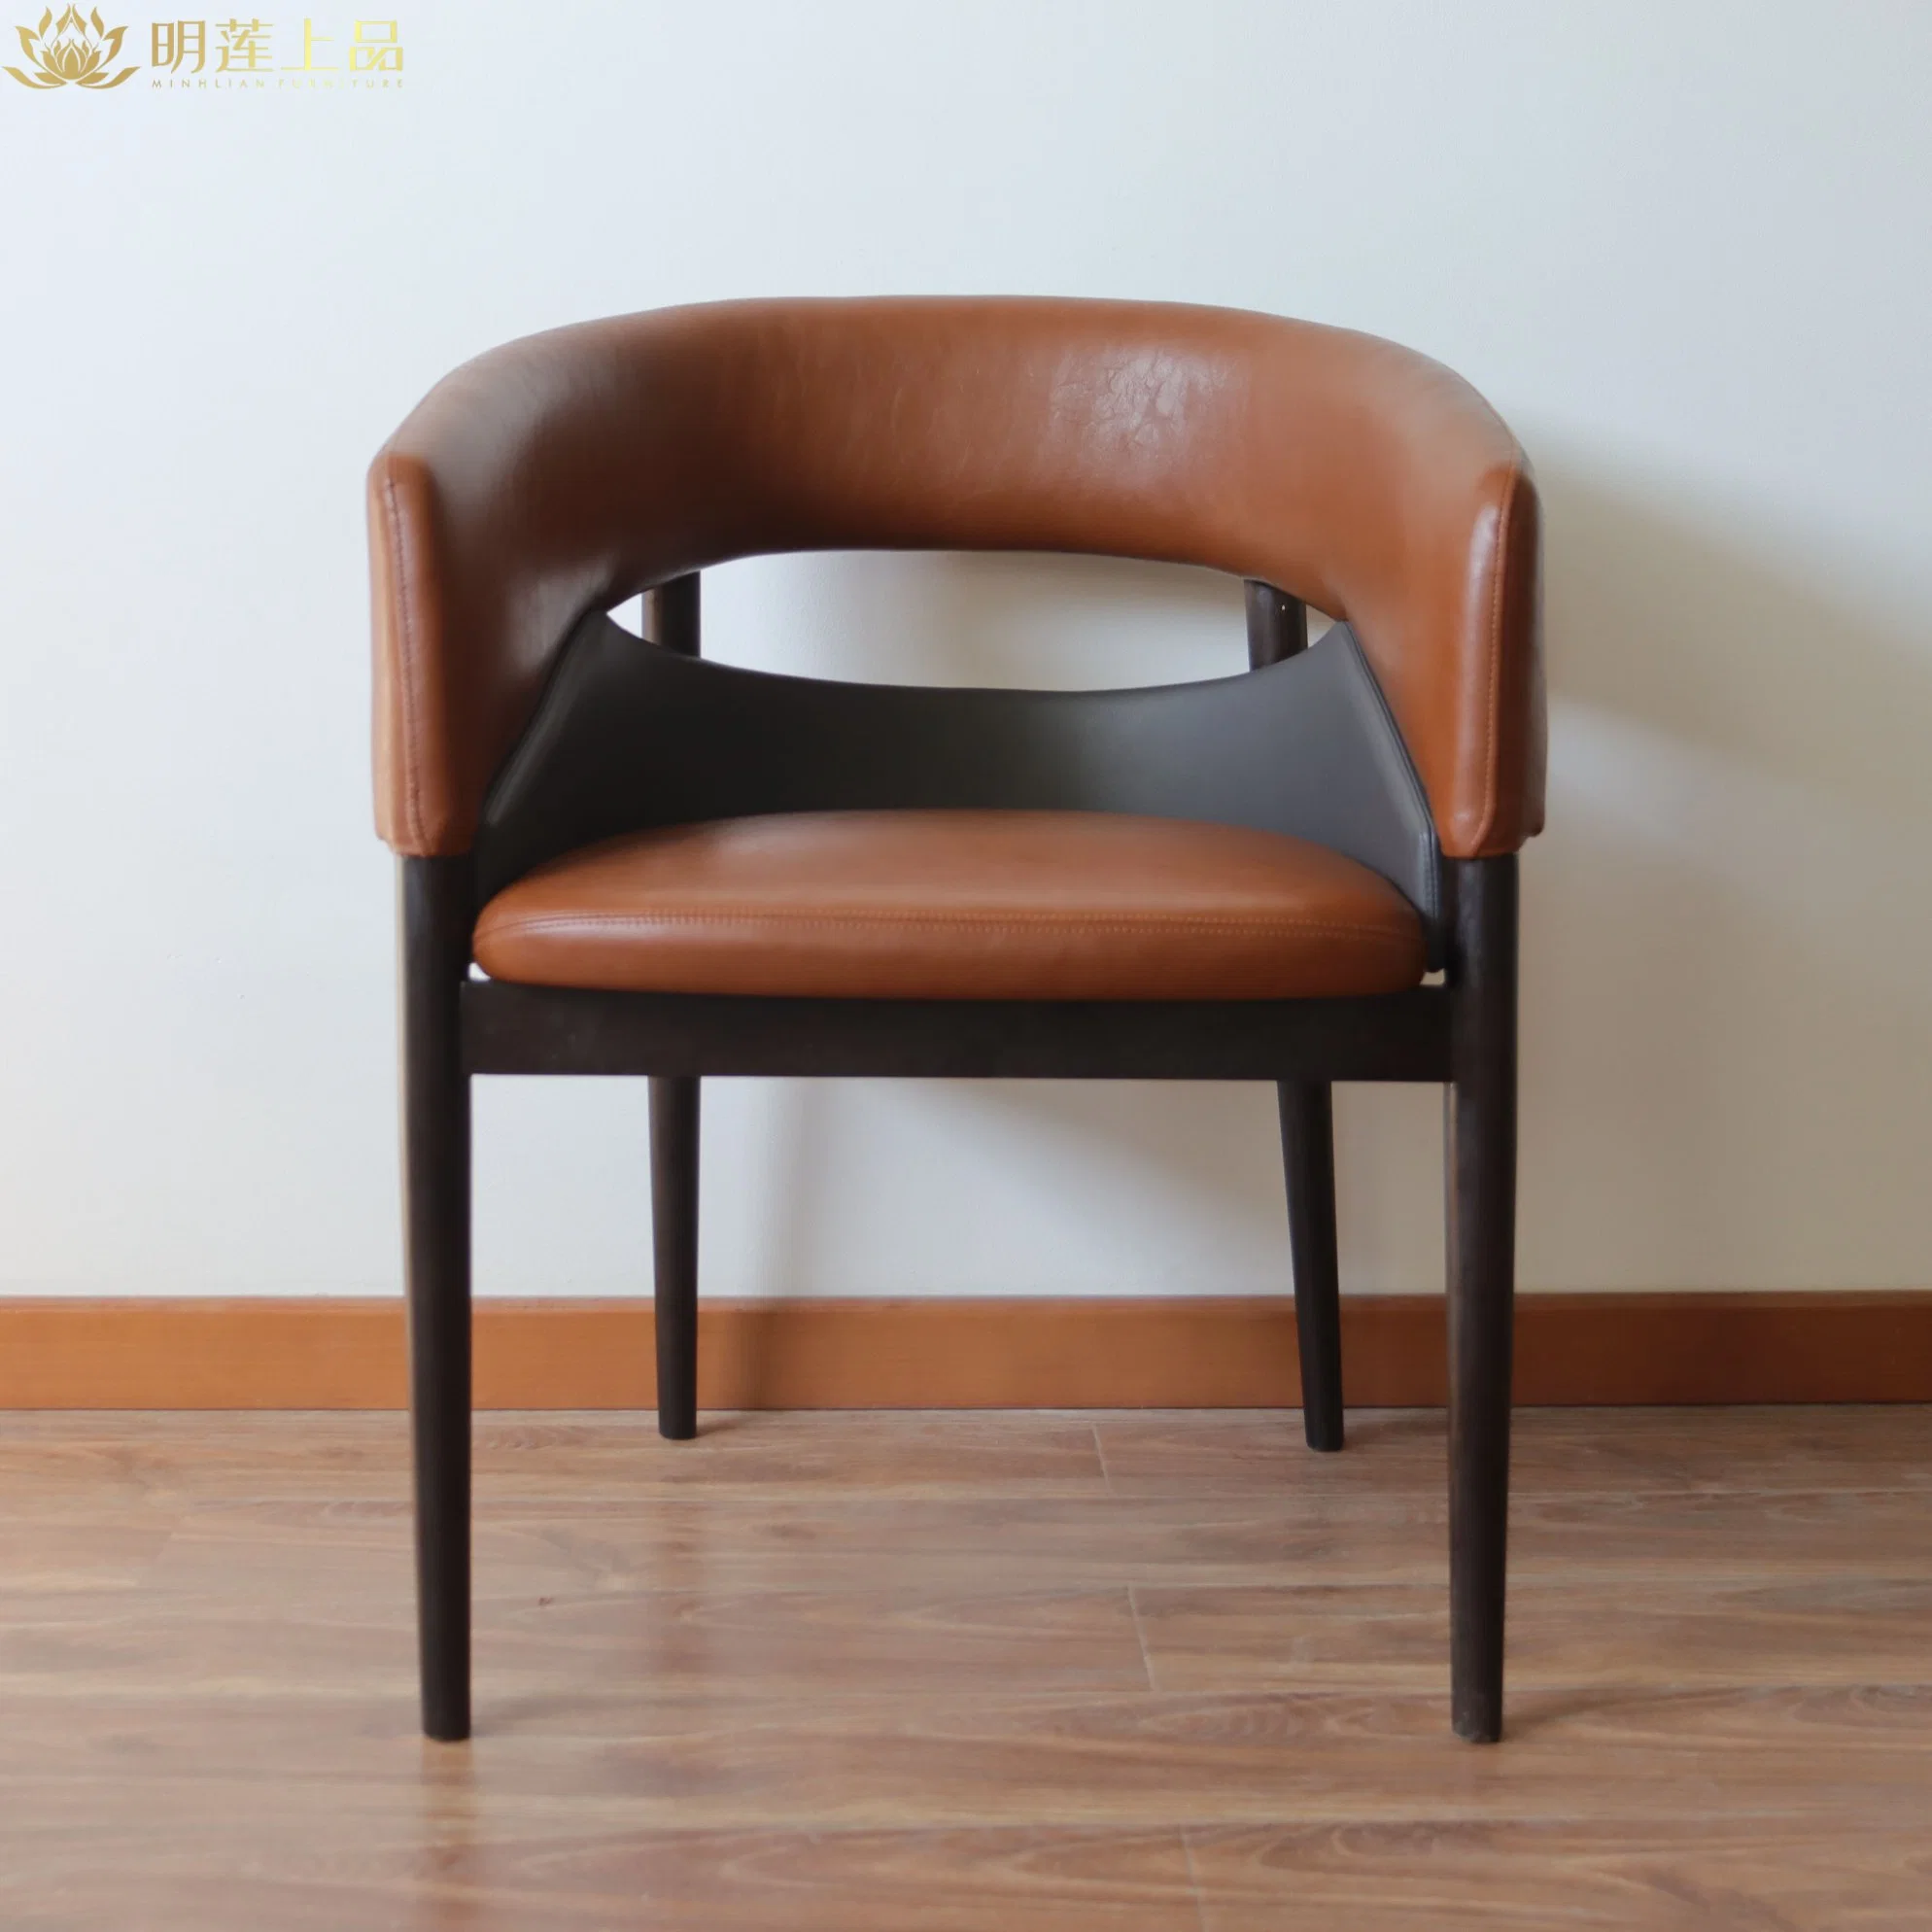 Chaise de salle à manger en bois massif au design moderne, chaise de restaurant rembourrée en cuir microfibre, chaise de loisirs en bois.